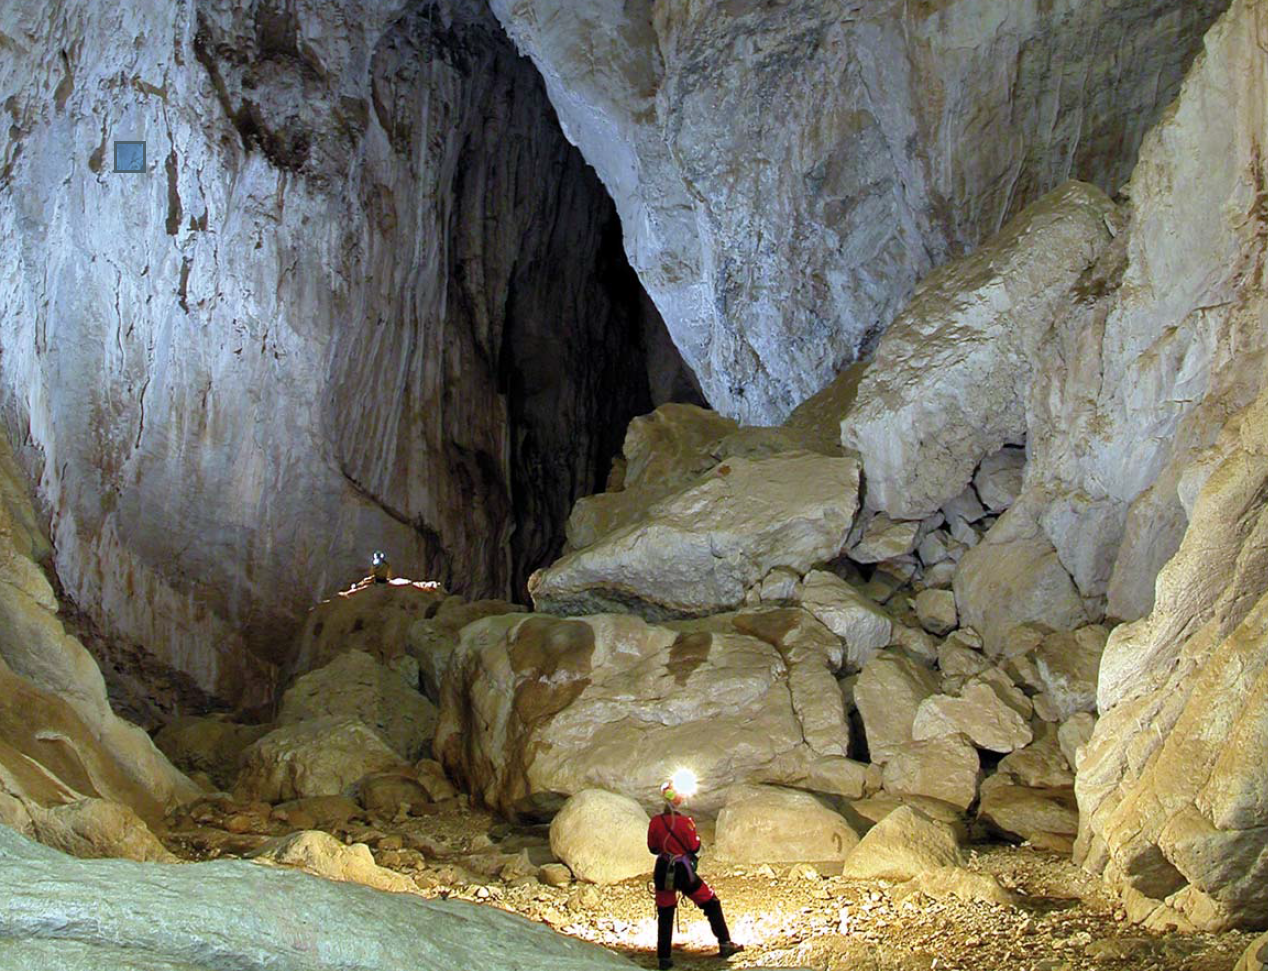 Hundidero Cave